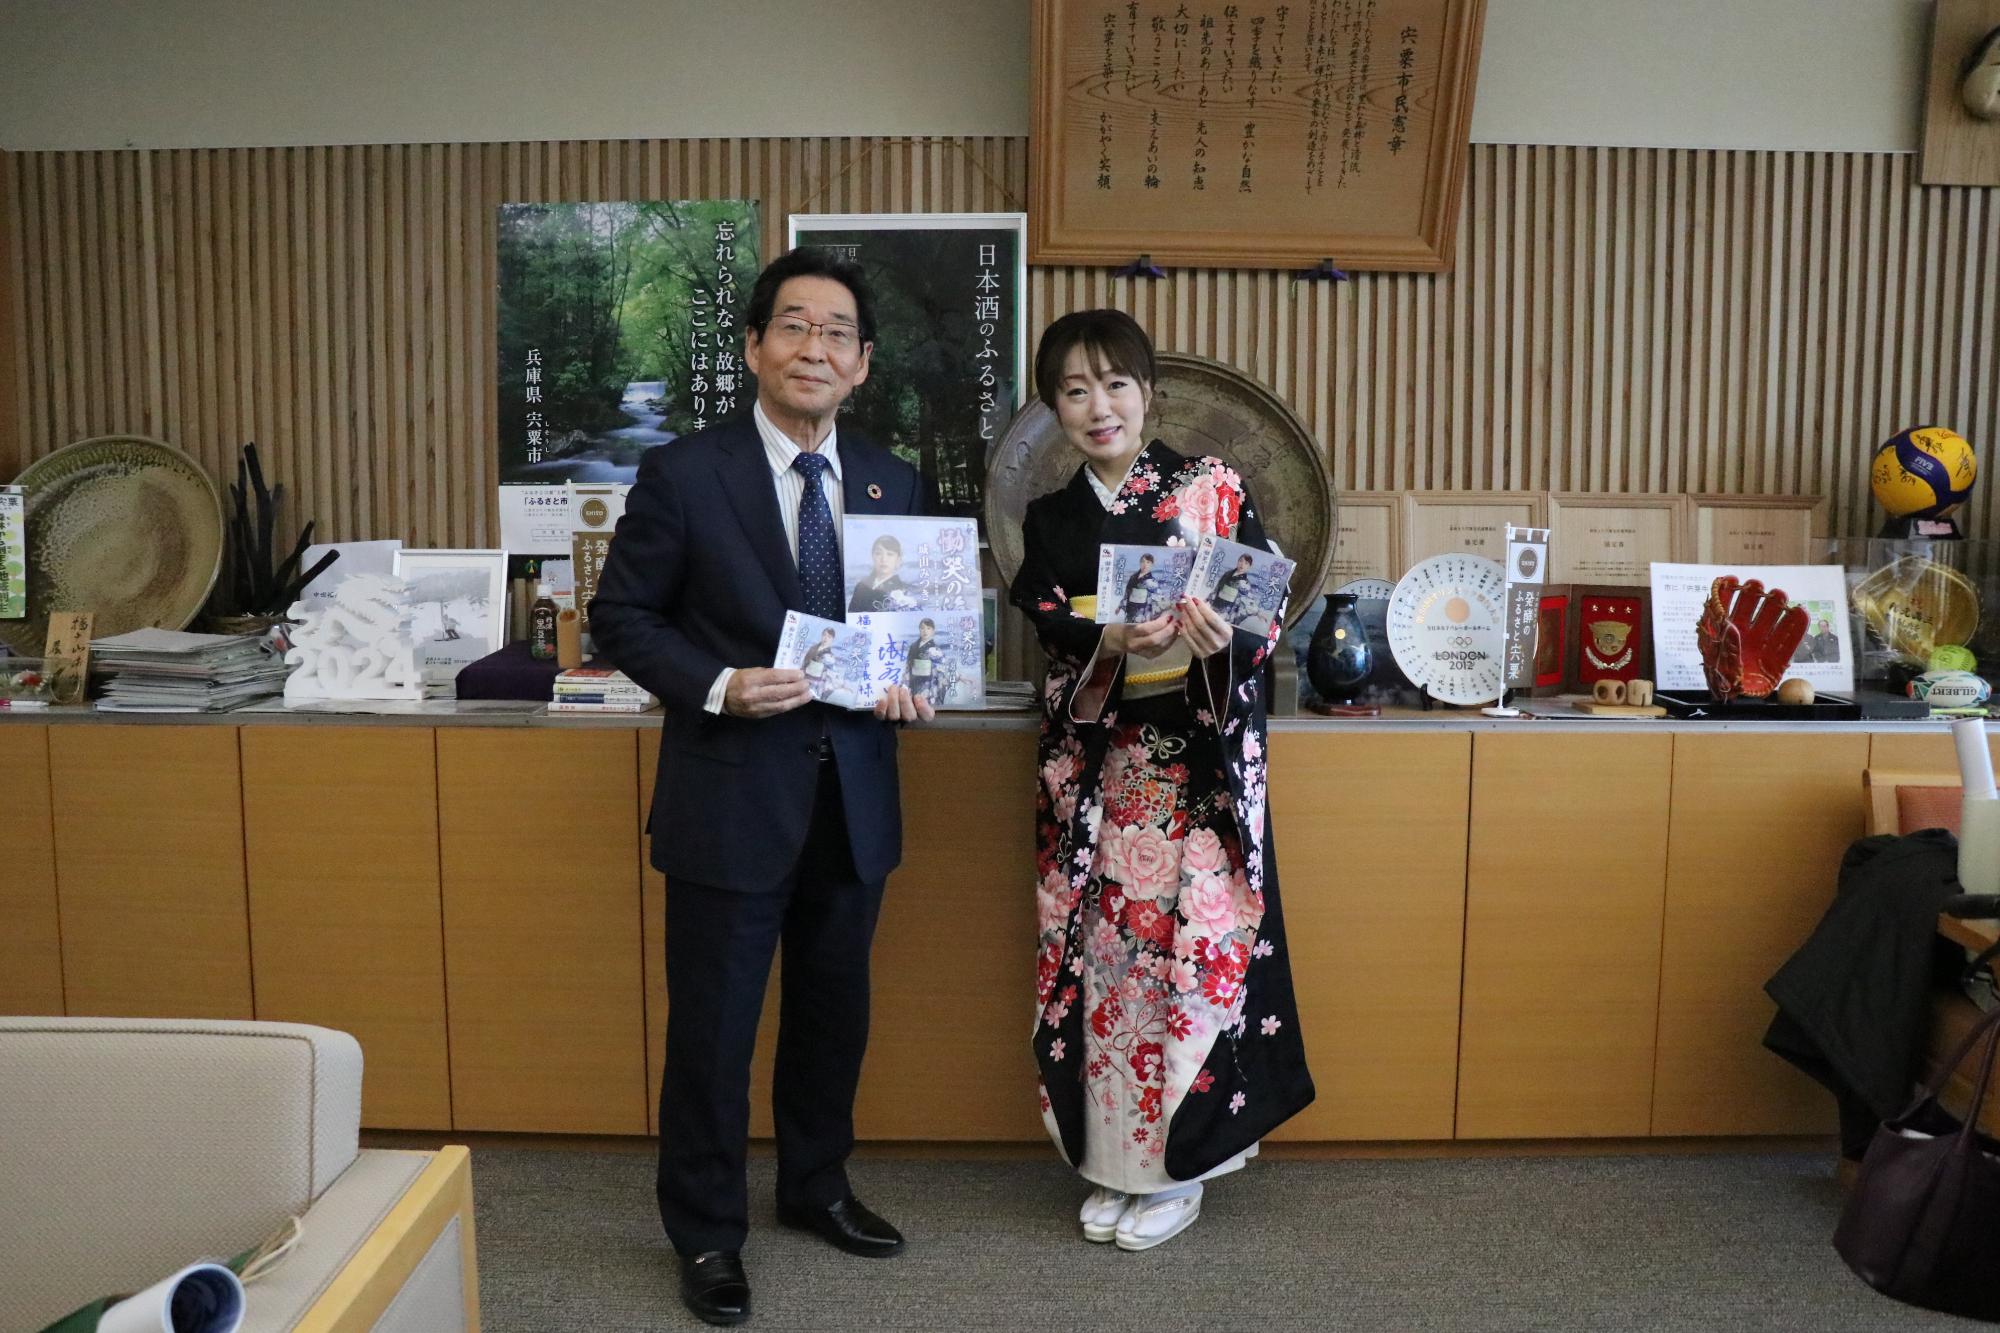 福元市長と宍粟市観光大使の城山みつきさんが並んでいる写真